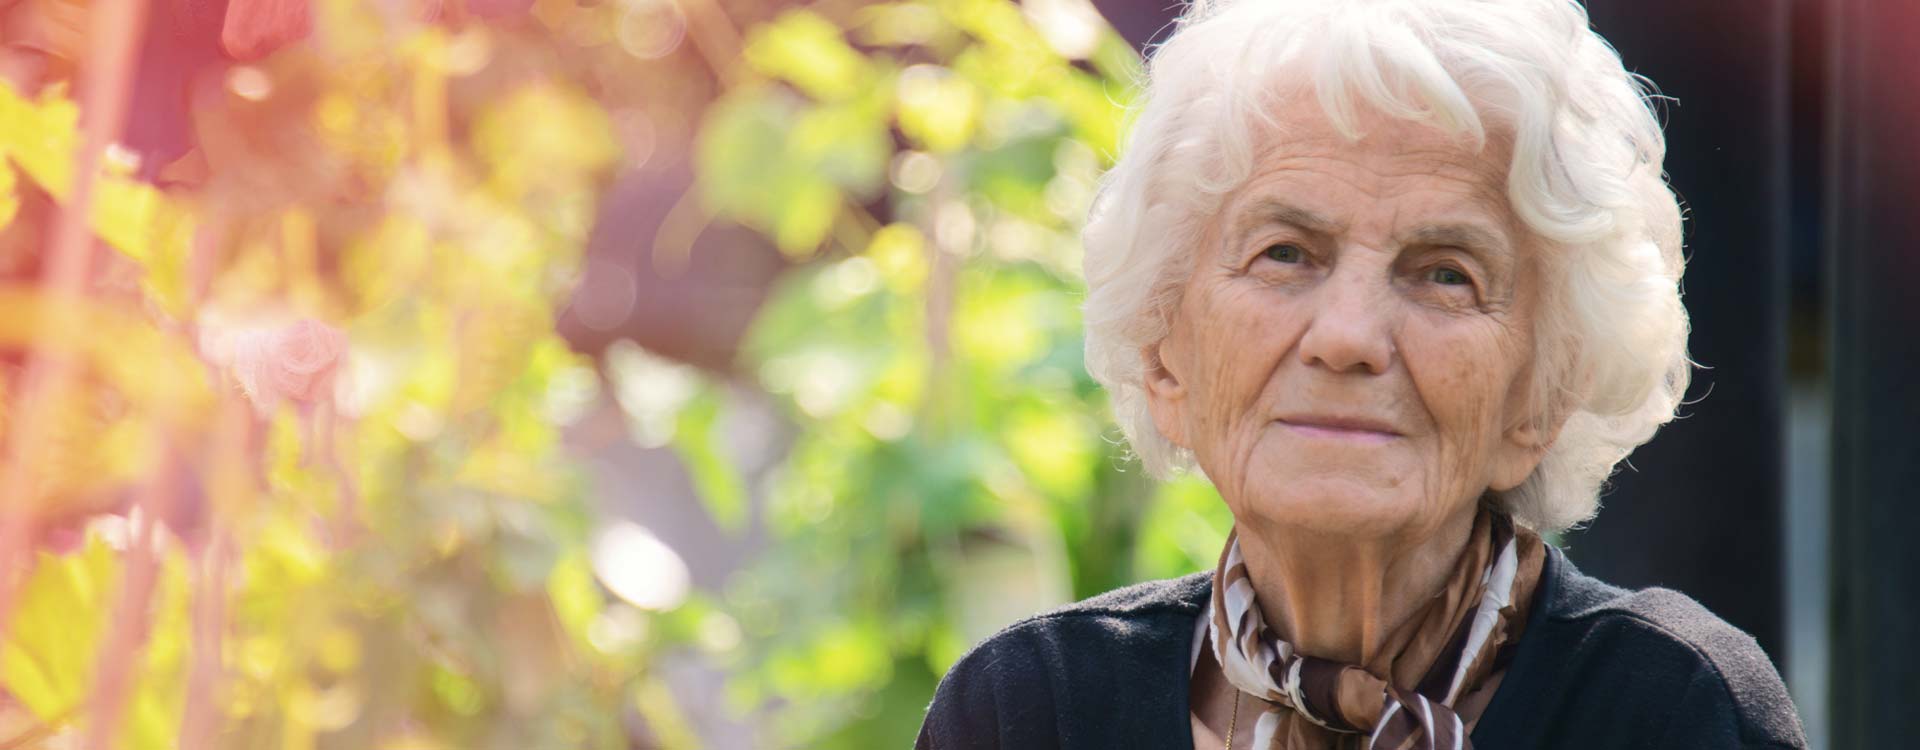 Ältere Frau blickt in Kamera | Novartis – Klinische Forschung